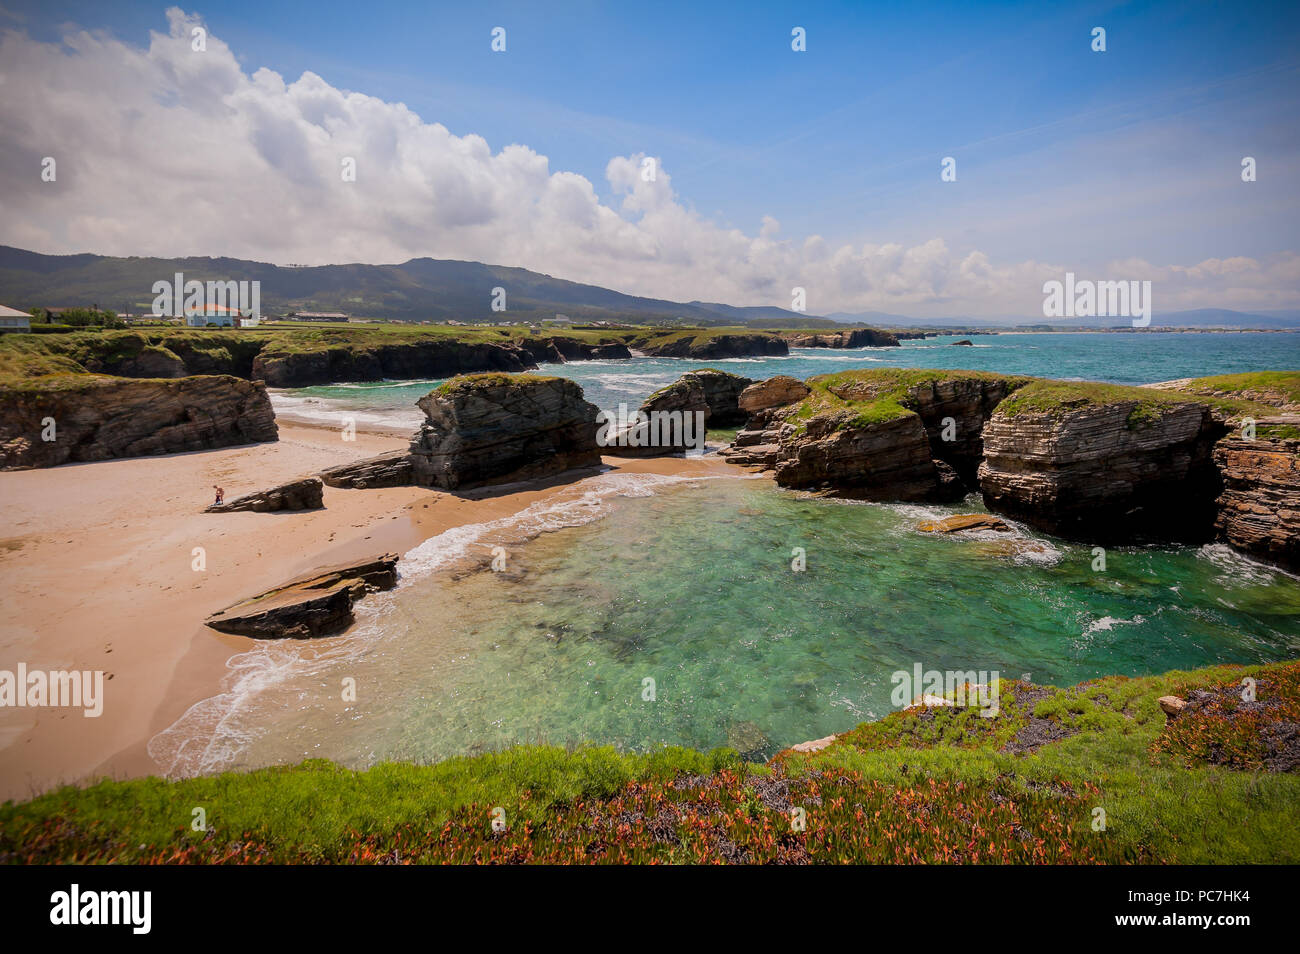 La bellezza della costa atlantica con cliff, la spiaggia, il mare e il cielo con le nuvole. La Galizia, Spagna. Foto Stock